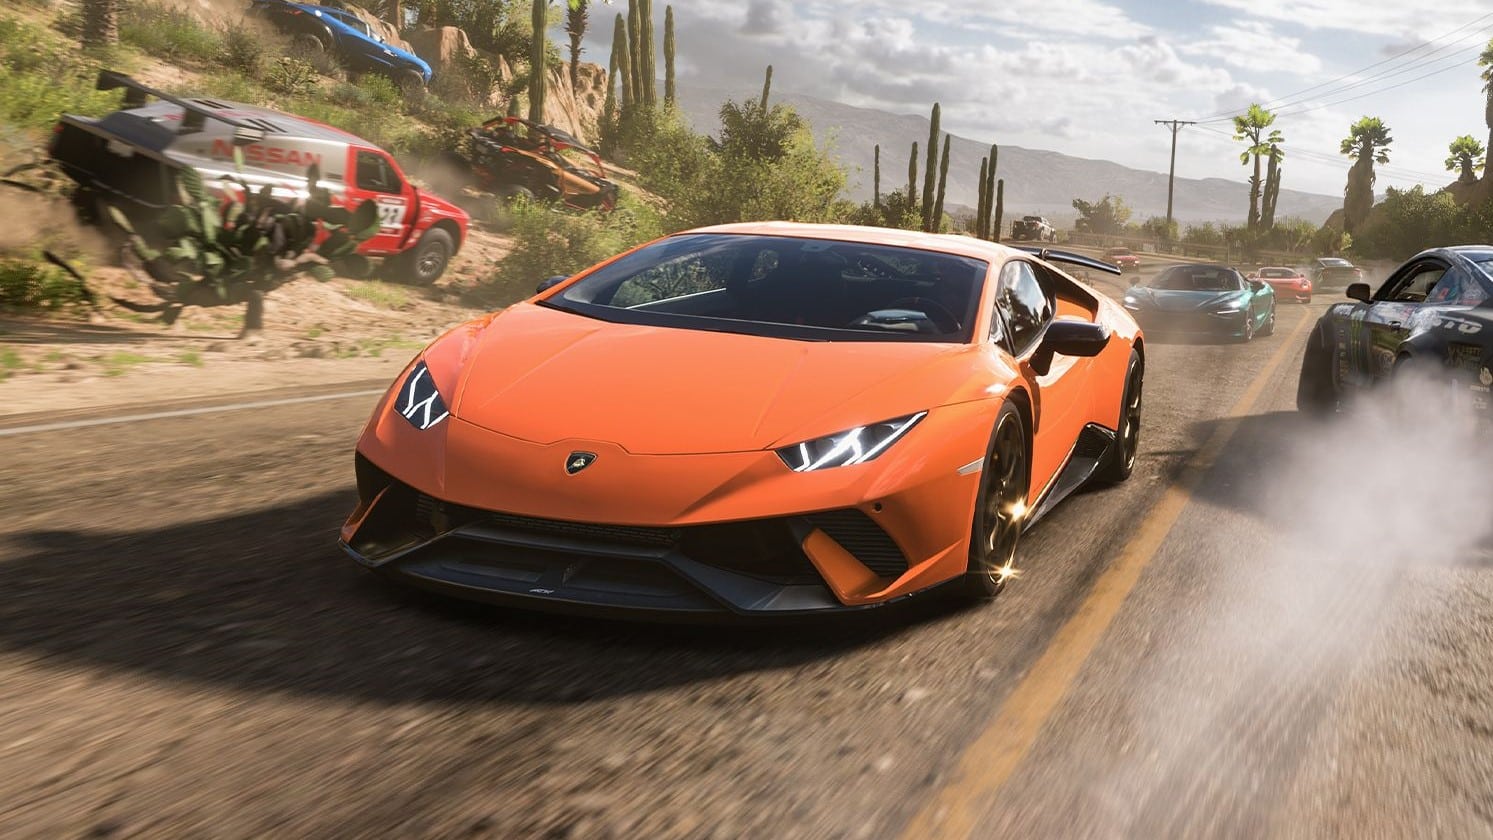 Forza Horizon 2 Review - GameSpot